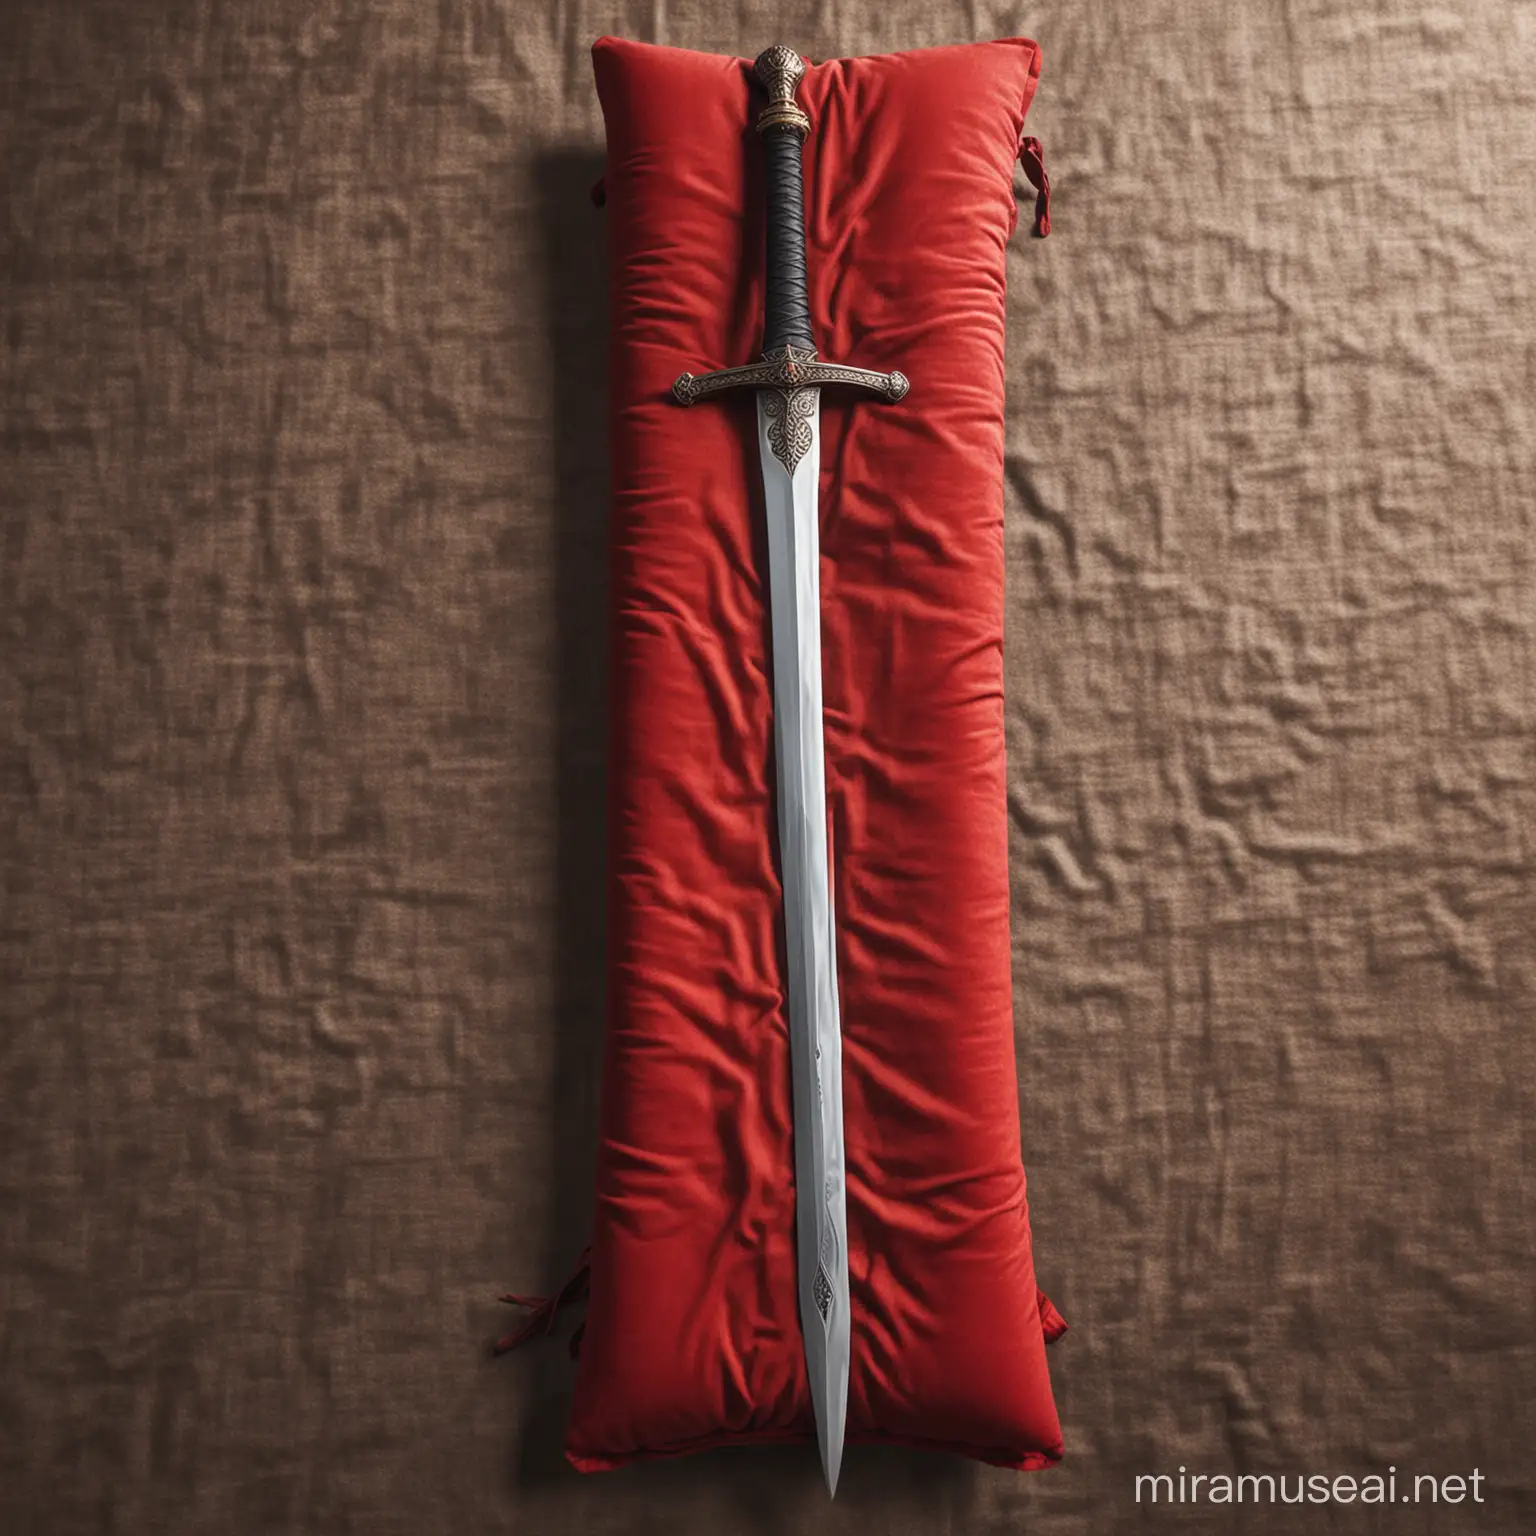 Majestic Great Sword Resting on Crimson Velvet